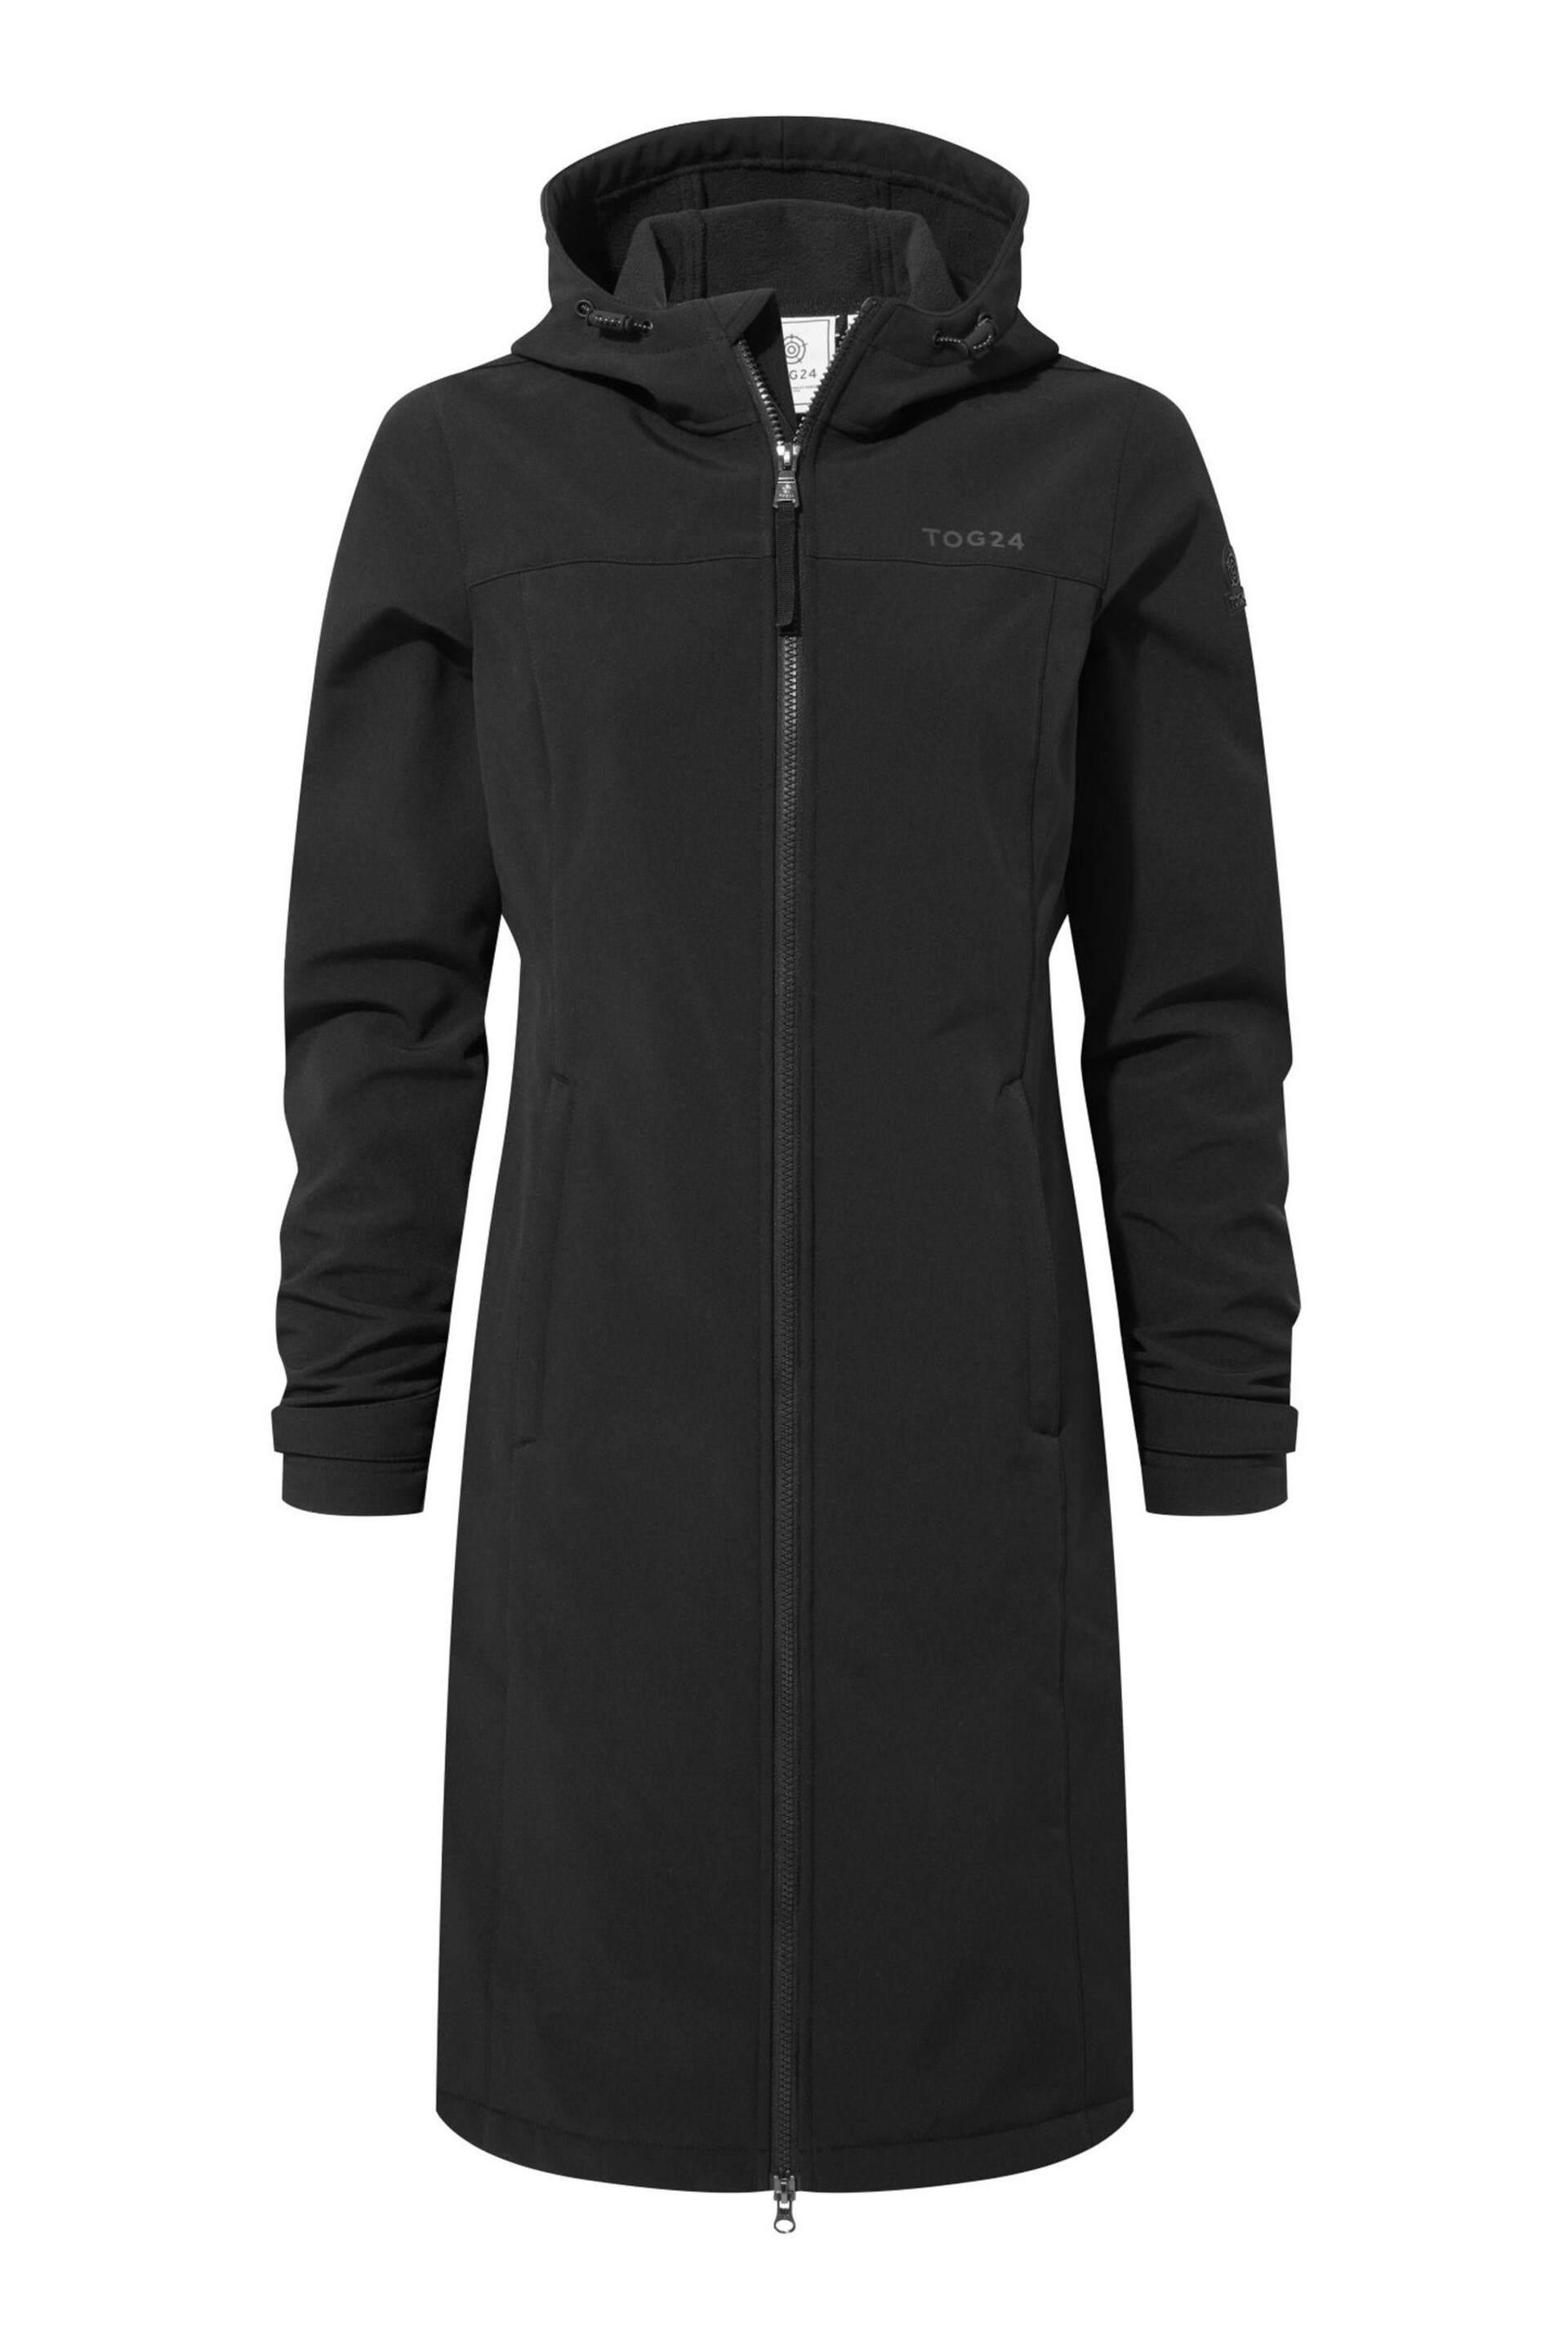 Tog 24 Black Marina Extra Long Softshell Jacket - Image 9 of 9